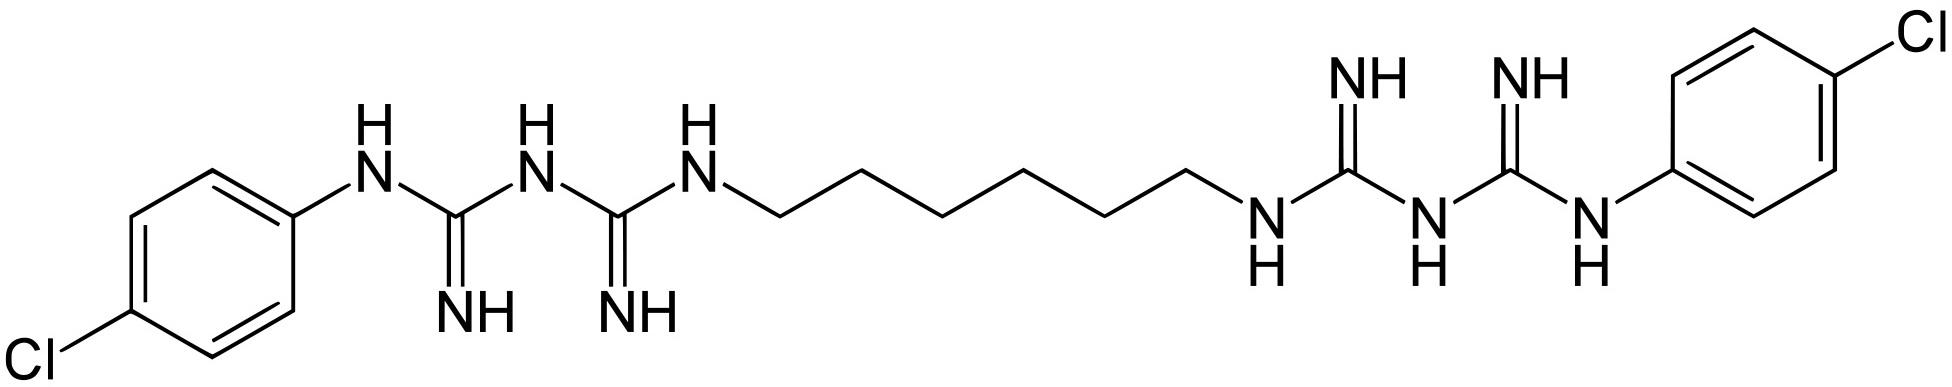 Хлоргексидин реакции. Структурная формула хлоргексидина биглюконата. Хлоргексидина биглюконат формула. Хлоргексидина биглюконат молекула. Биглюконат формула.